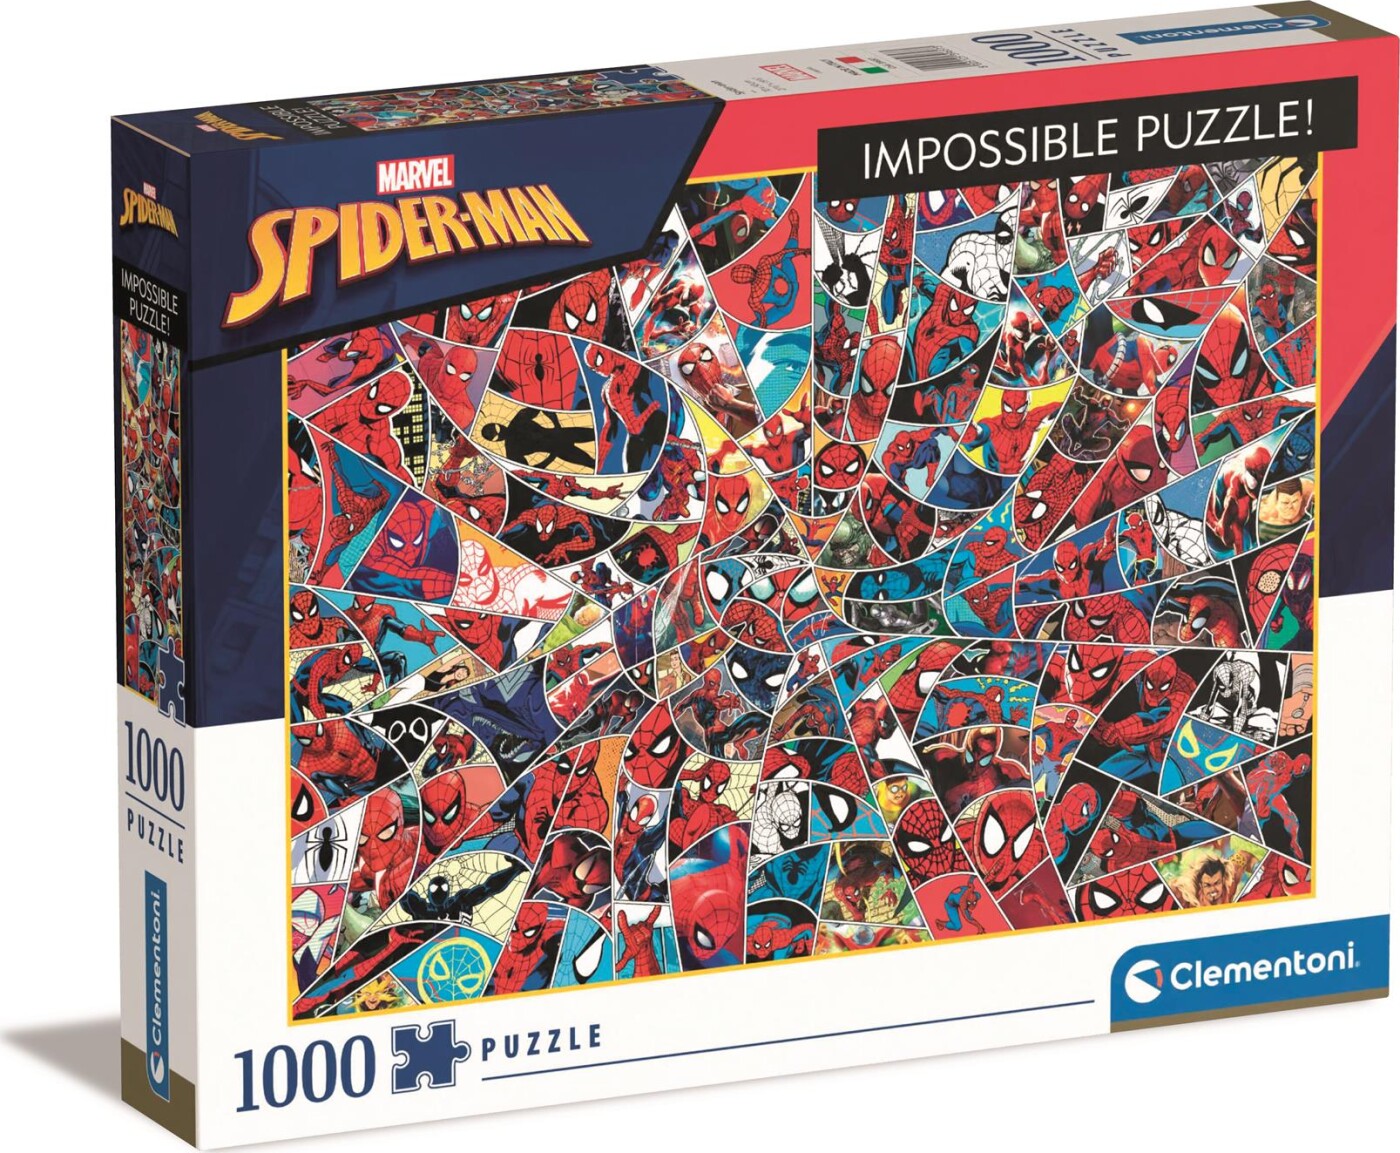 Billede af Spider-man Puslespil - Clementoni - 1000 Brikker - Impossible